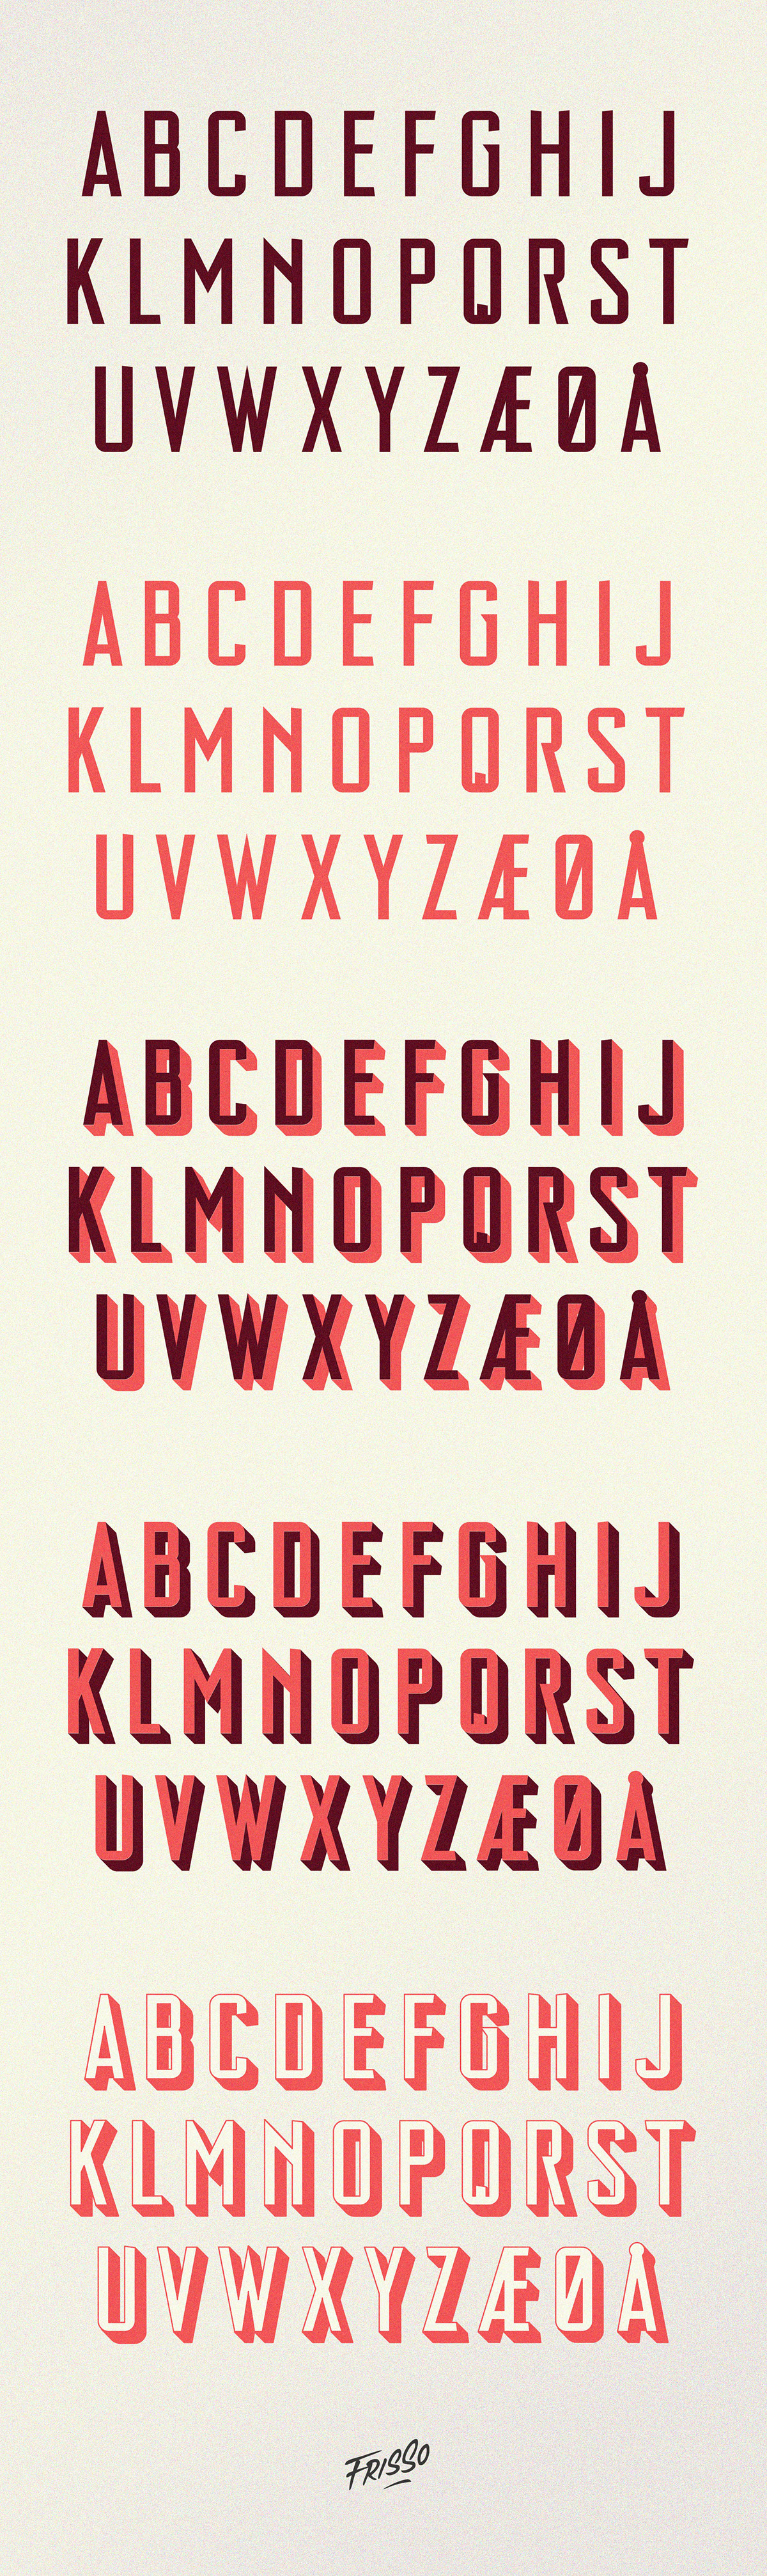 all caps Typeface shade alphabet frisso   caffa151   font